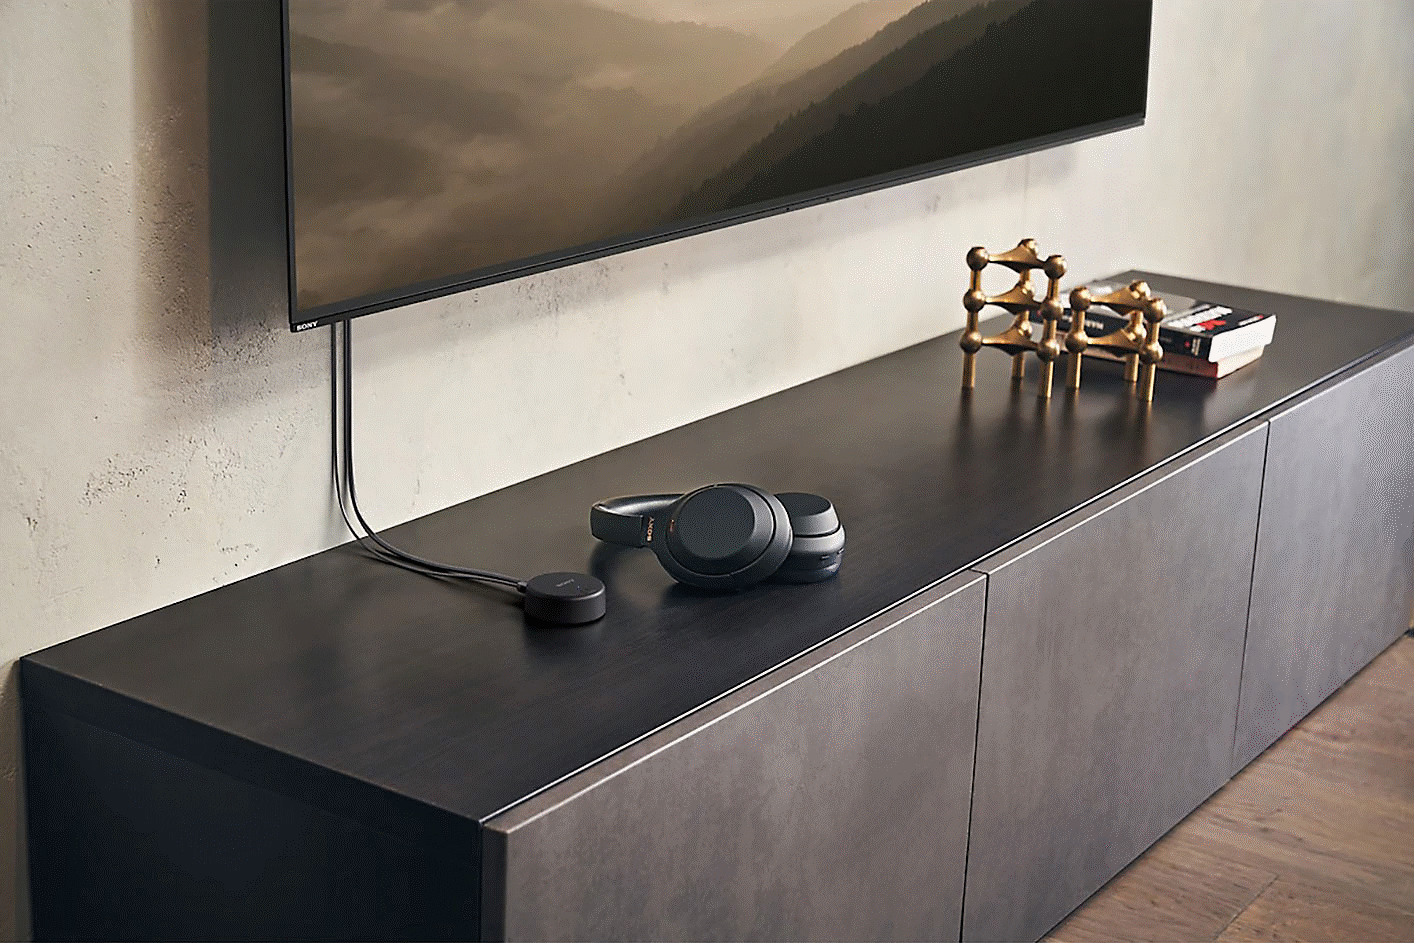 Bild von Kopfhörern auf TV-Möbelstück neben einem WLA-NS7 kabellosen Sender von Sony